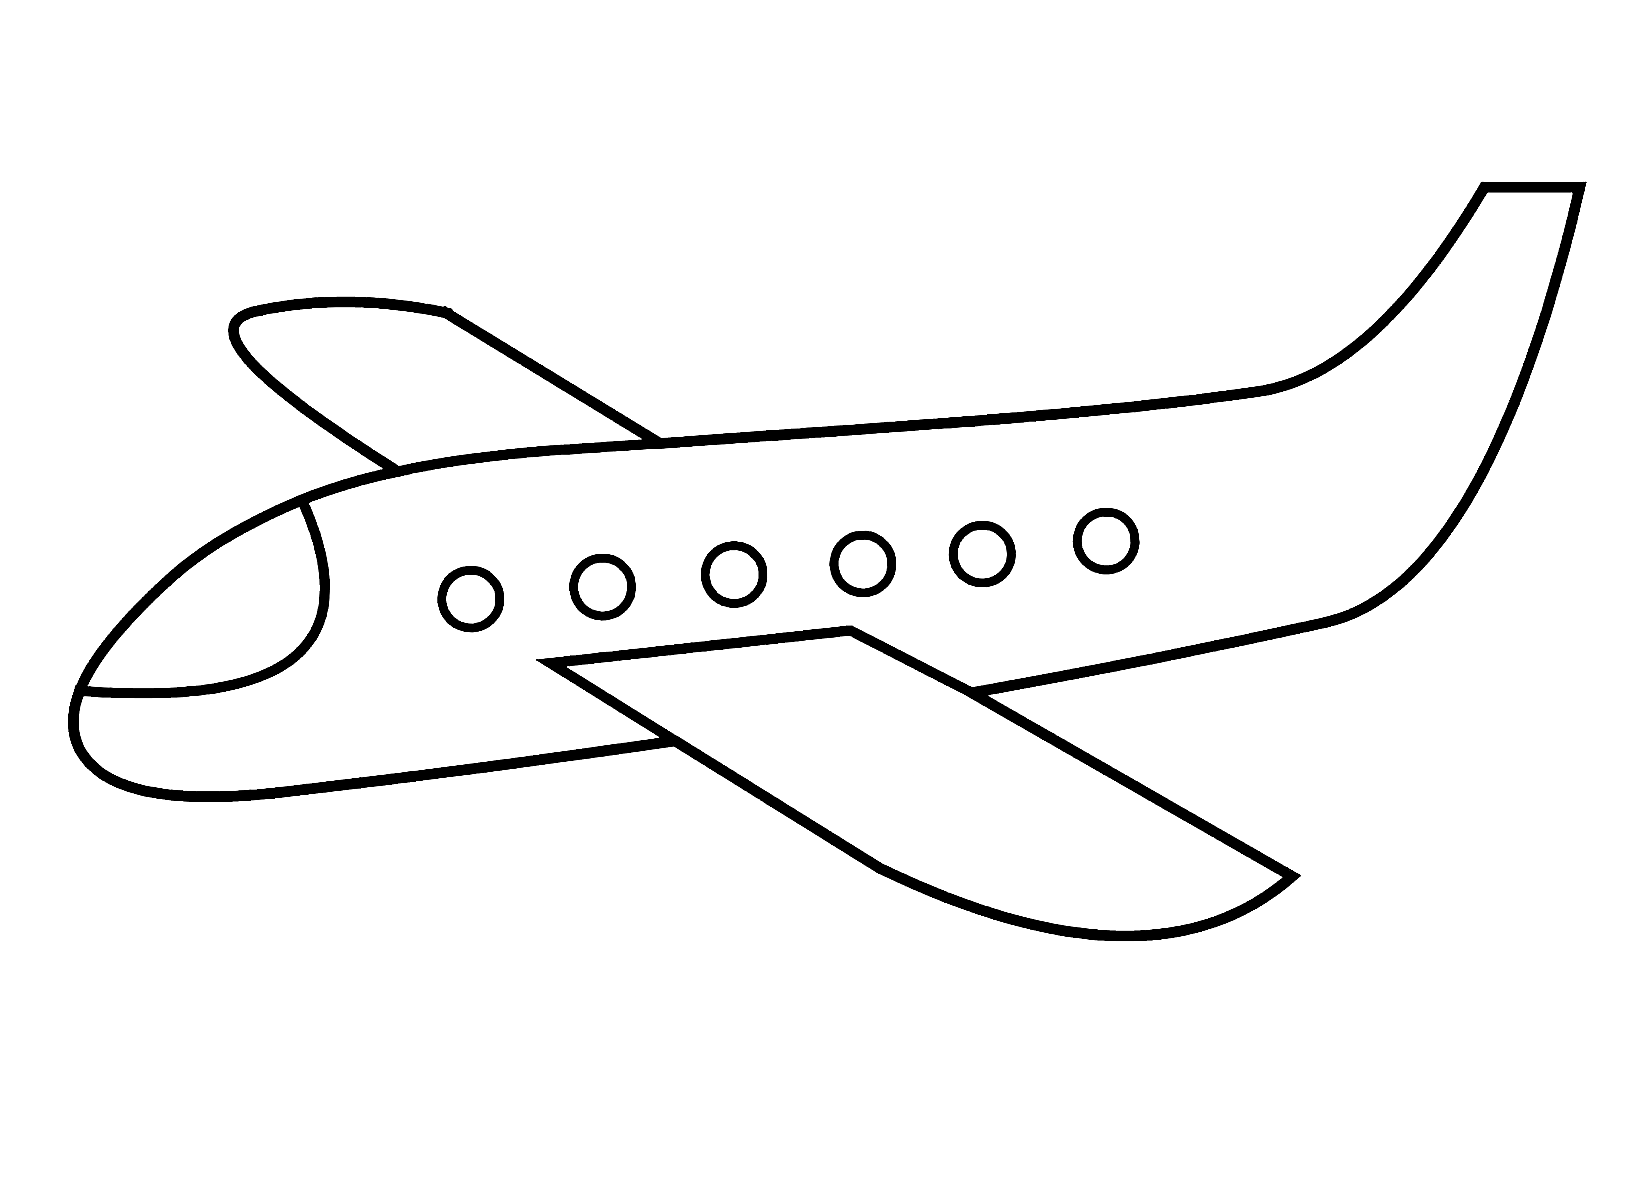 рисунок самолета для детей - 4787020